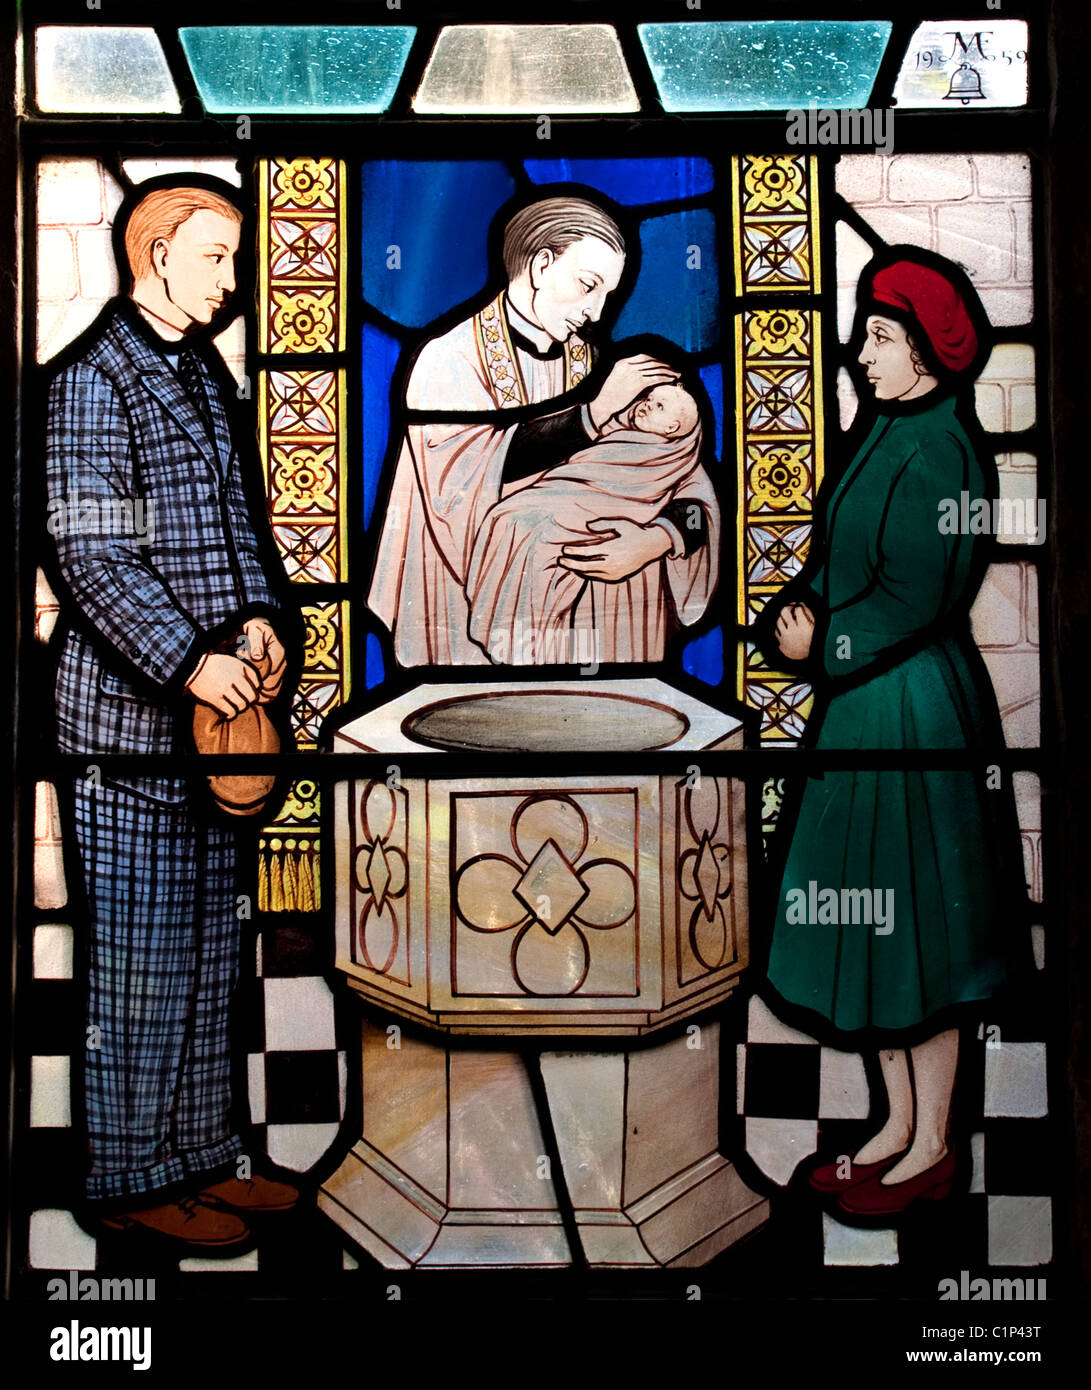 Detail von der Glasmalerei-Fenster zeigt ein Baby wird getauft/getauft, All Saints Church, Lager Dorf, Essex, UK Stockfoto